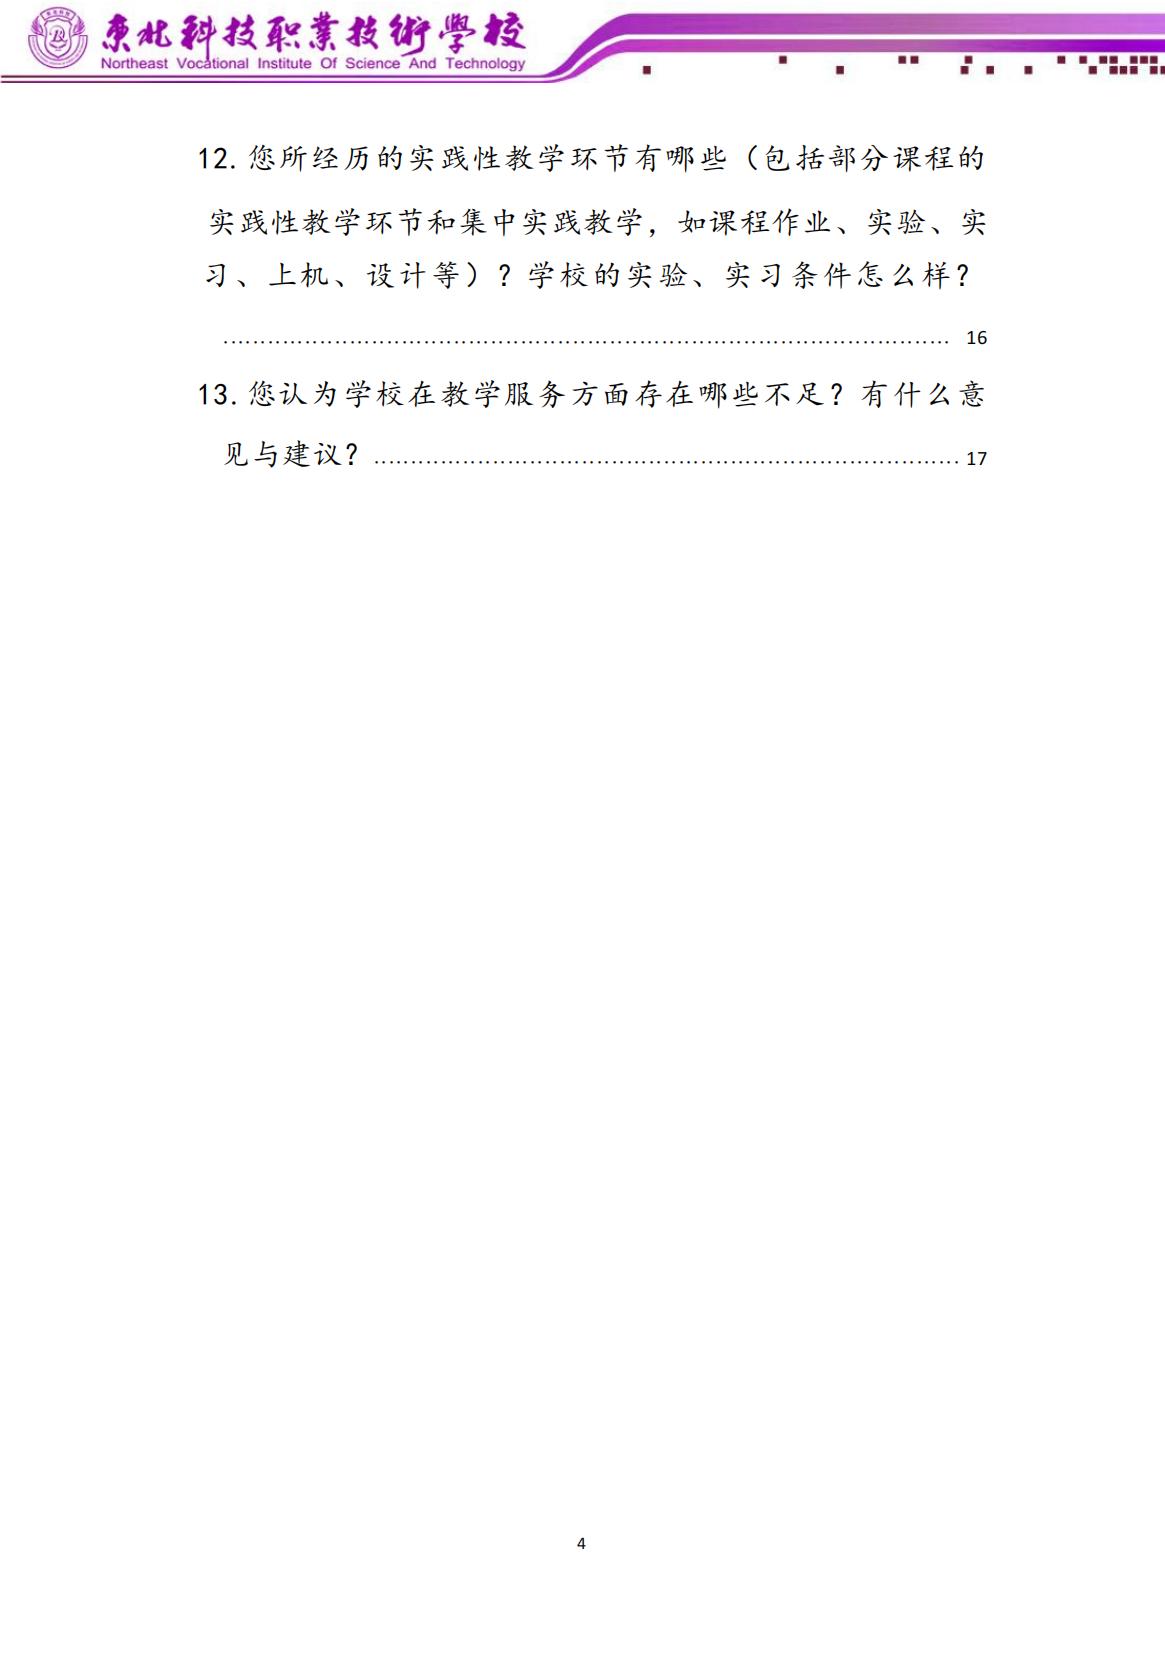 东北科技学习中心应知应会手册（学生版）(2)_00